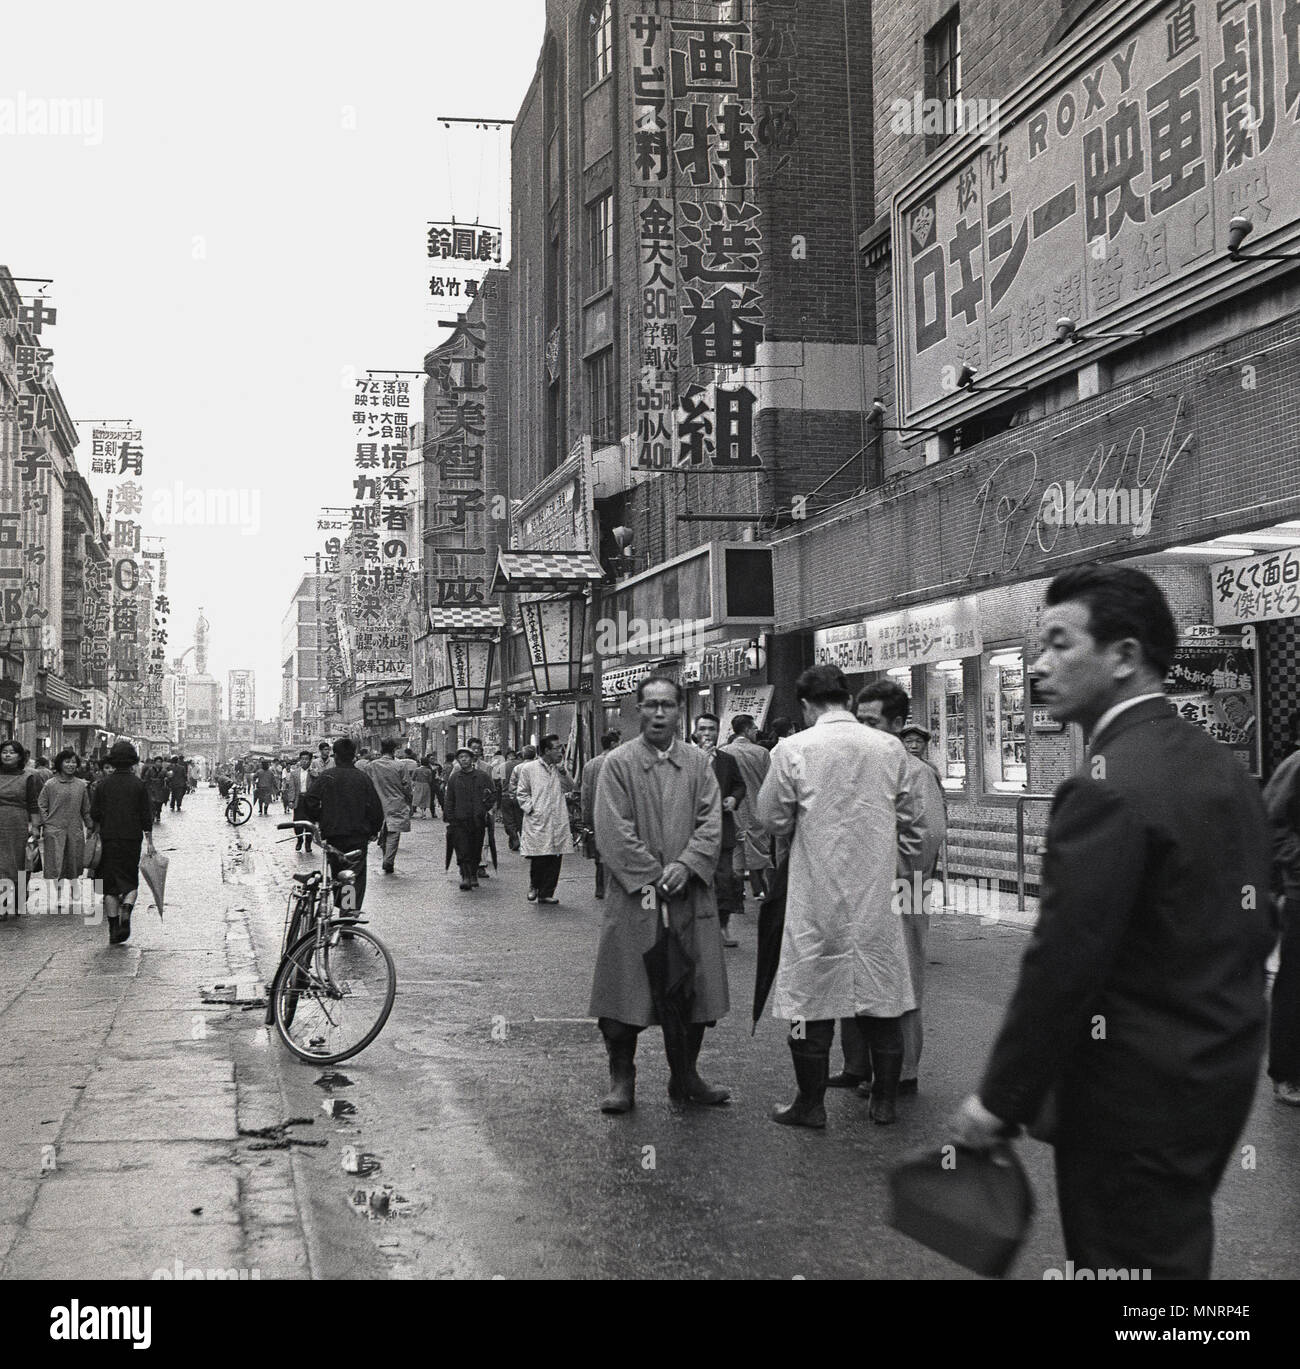 1950, historische, Außenansicht, eine Fußgängerzone in der Innenstadt  Straße in Tokio, Japan, mit dem Roxy auf der rechten Seite. Frühling und  rainmacs und Sonnenschirme werden als schauerwetter ein gemeinsames  Auftreten in der